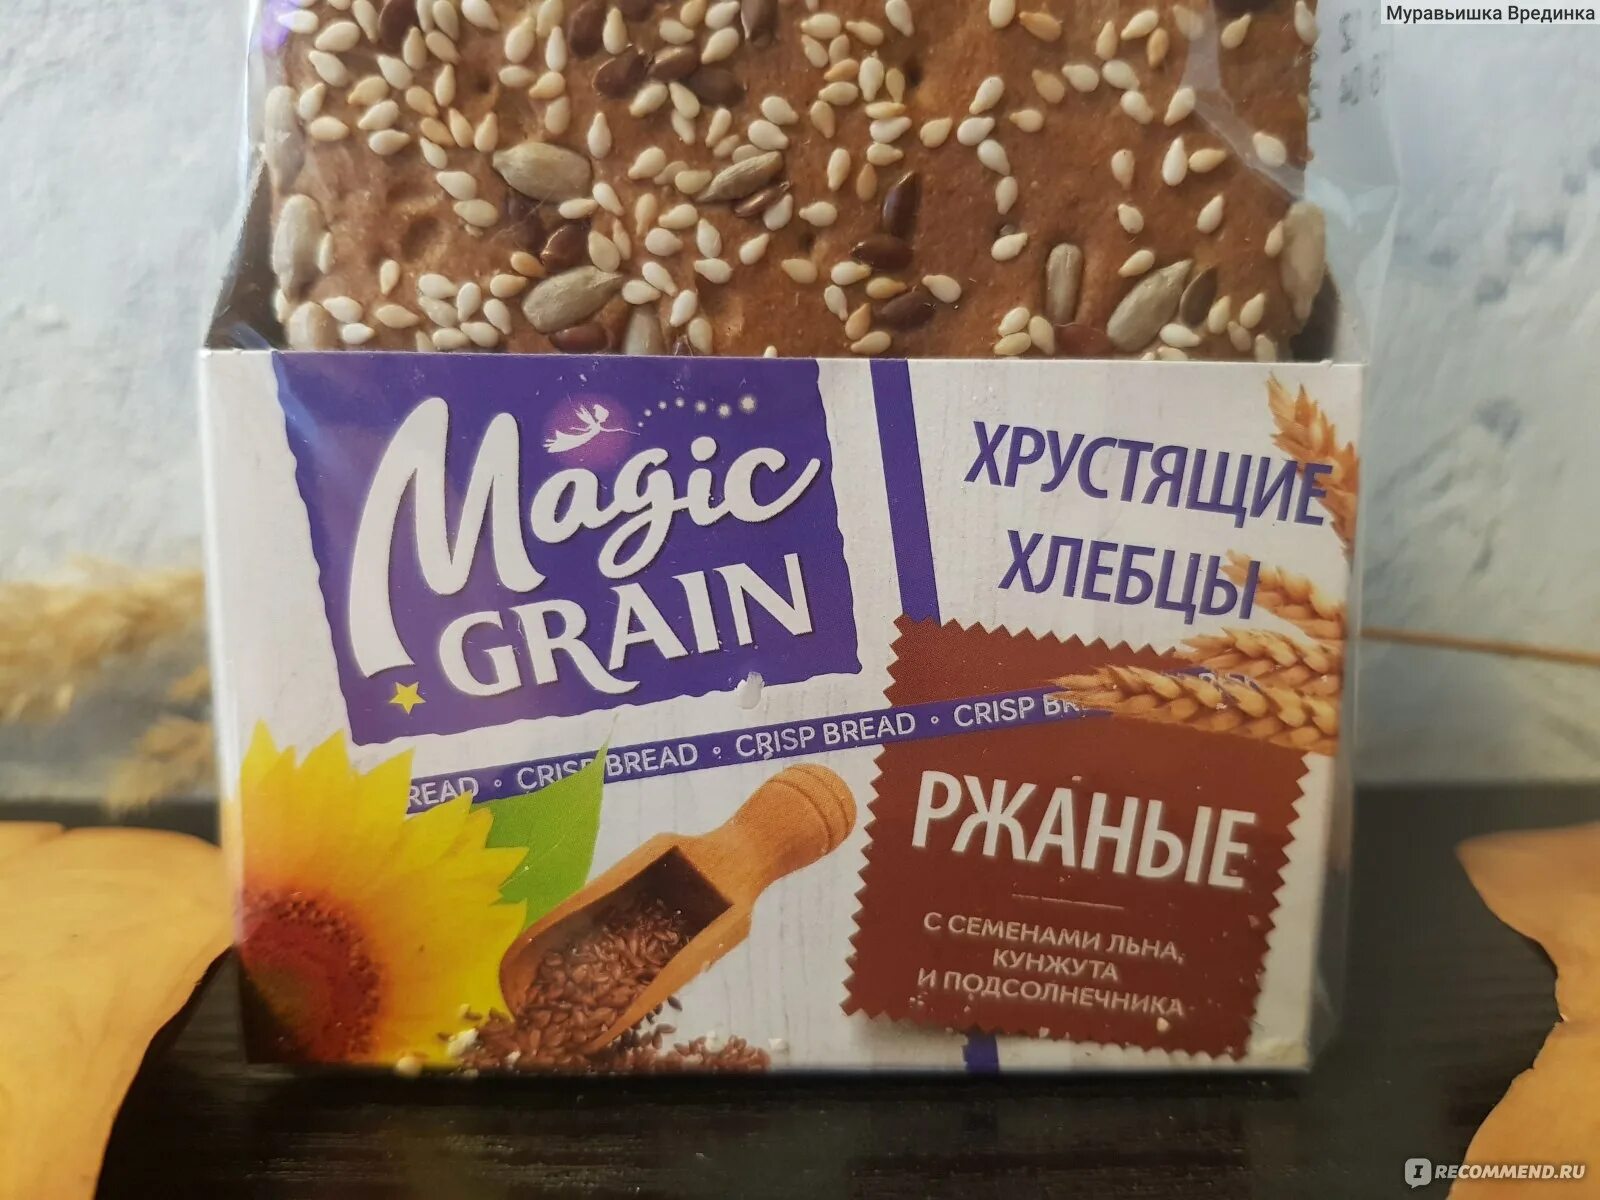 Magic grain. Хлебцы Magic Grain. Хлебцы ржаные с семечками Magic Grain. 2 Хлебца. Хлебцы Magic Grain ржаные к/п 160г.